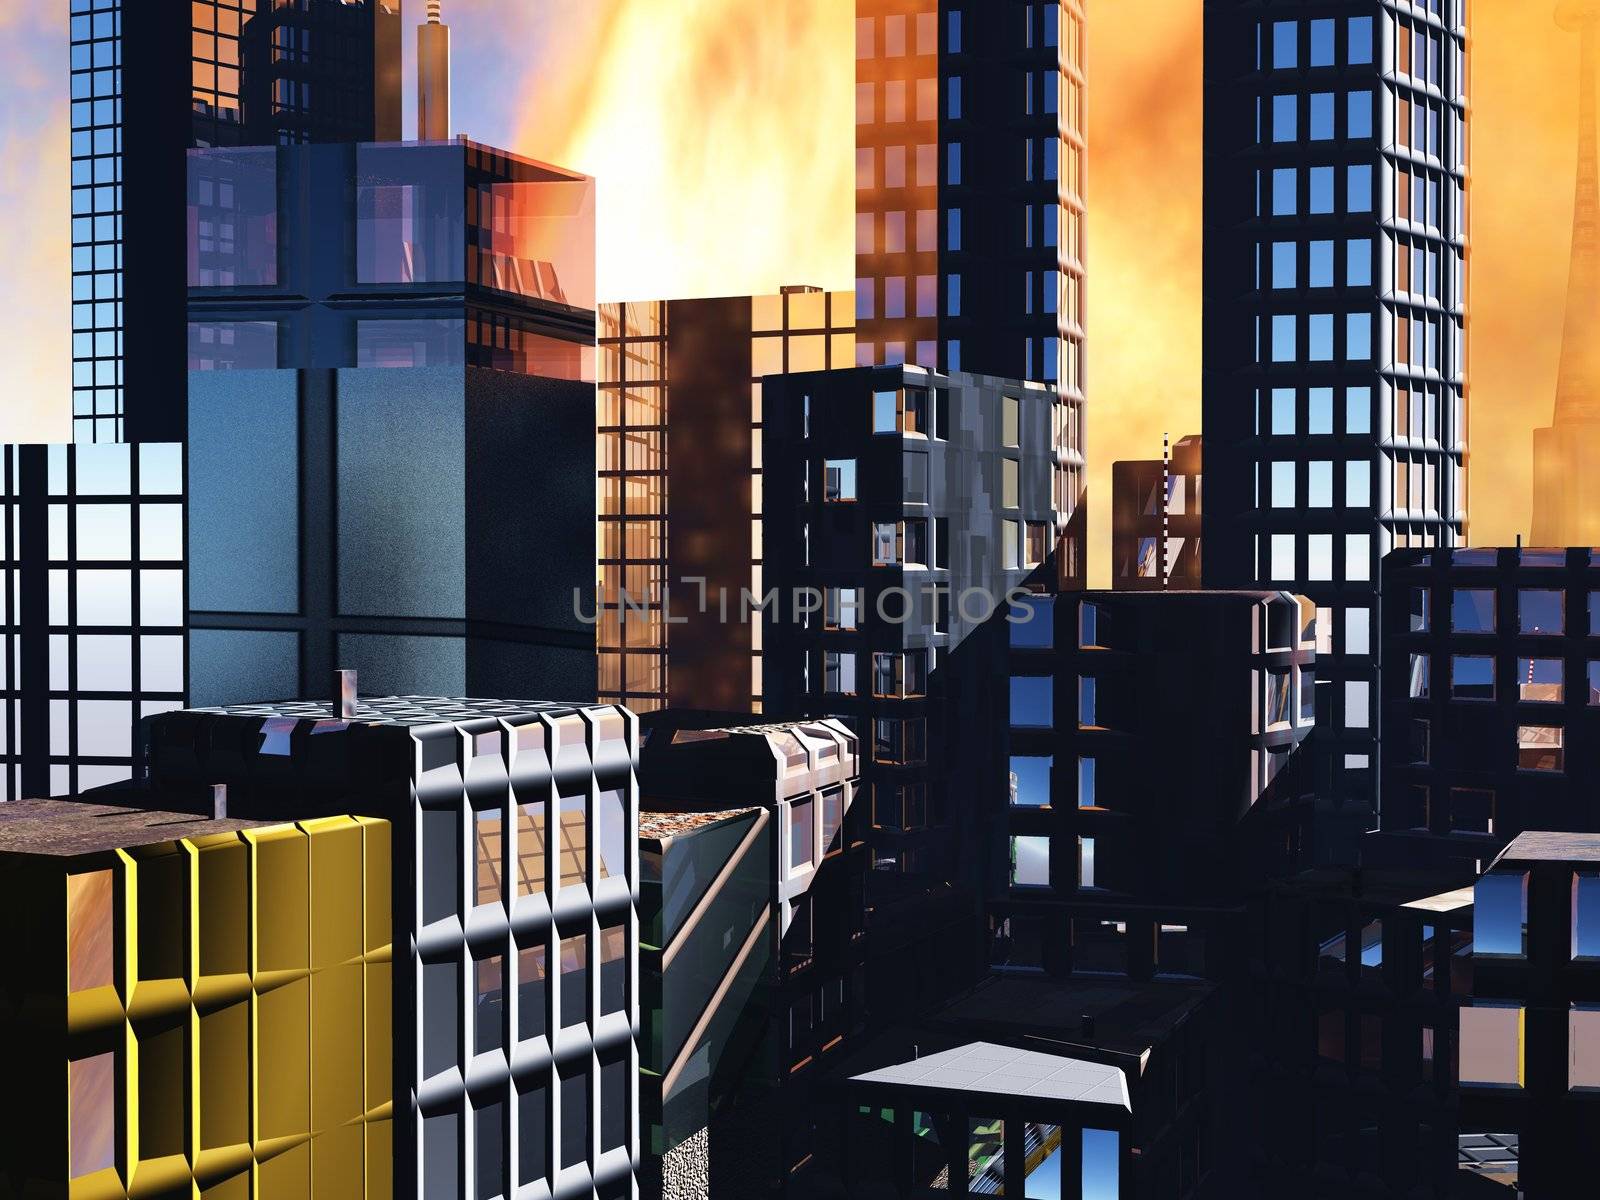 Armageddon scene in city by andromeda13